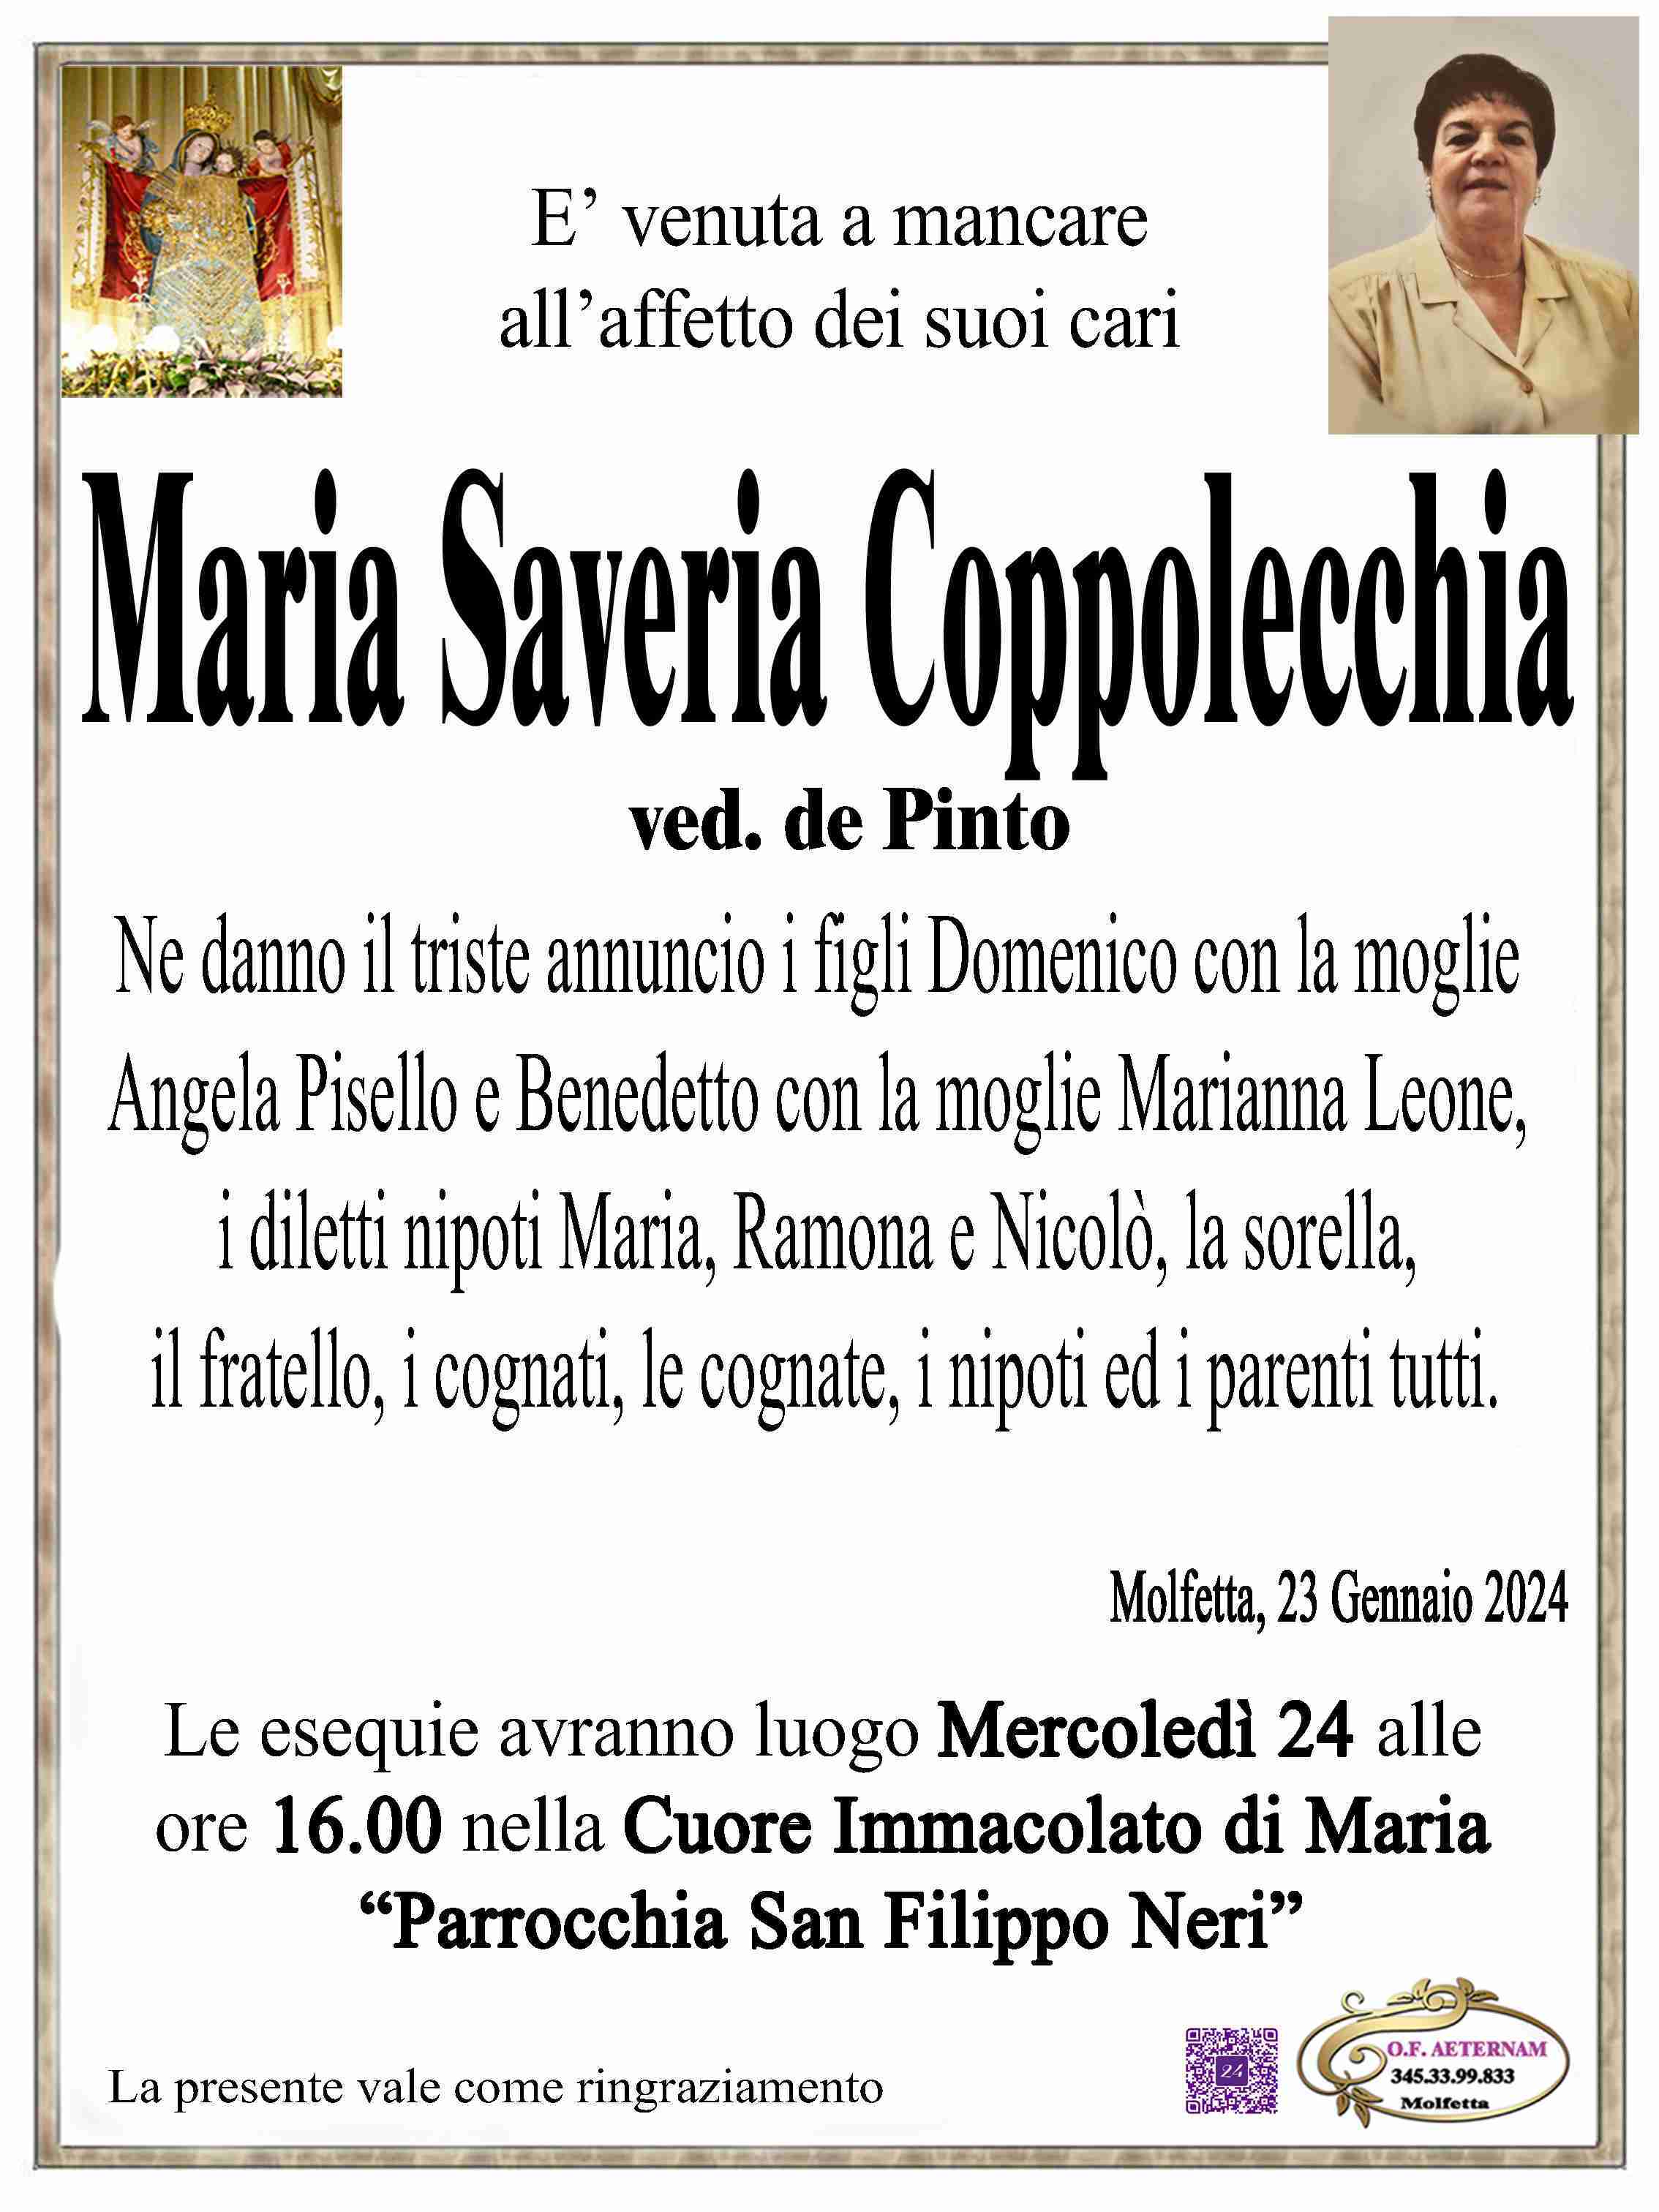 Maria Teresa Coppolecchia